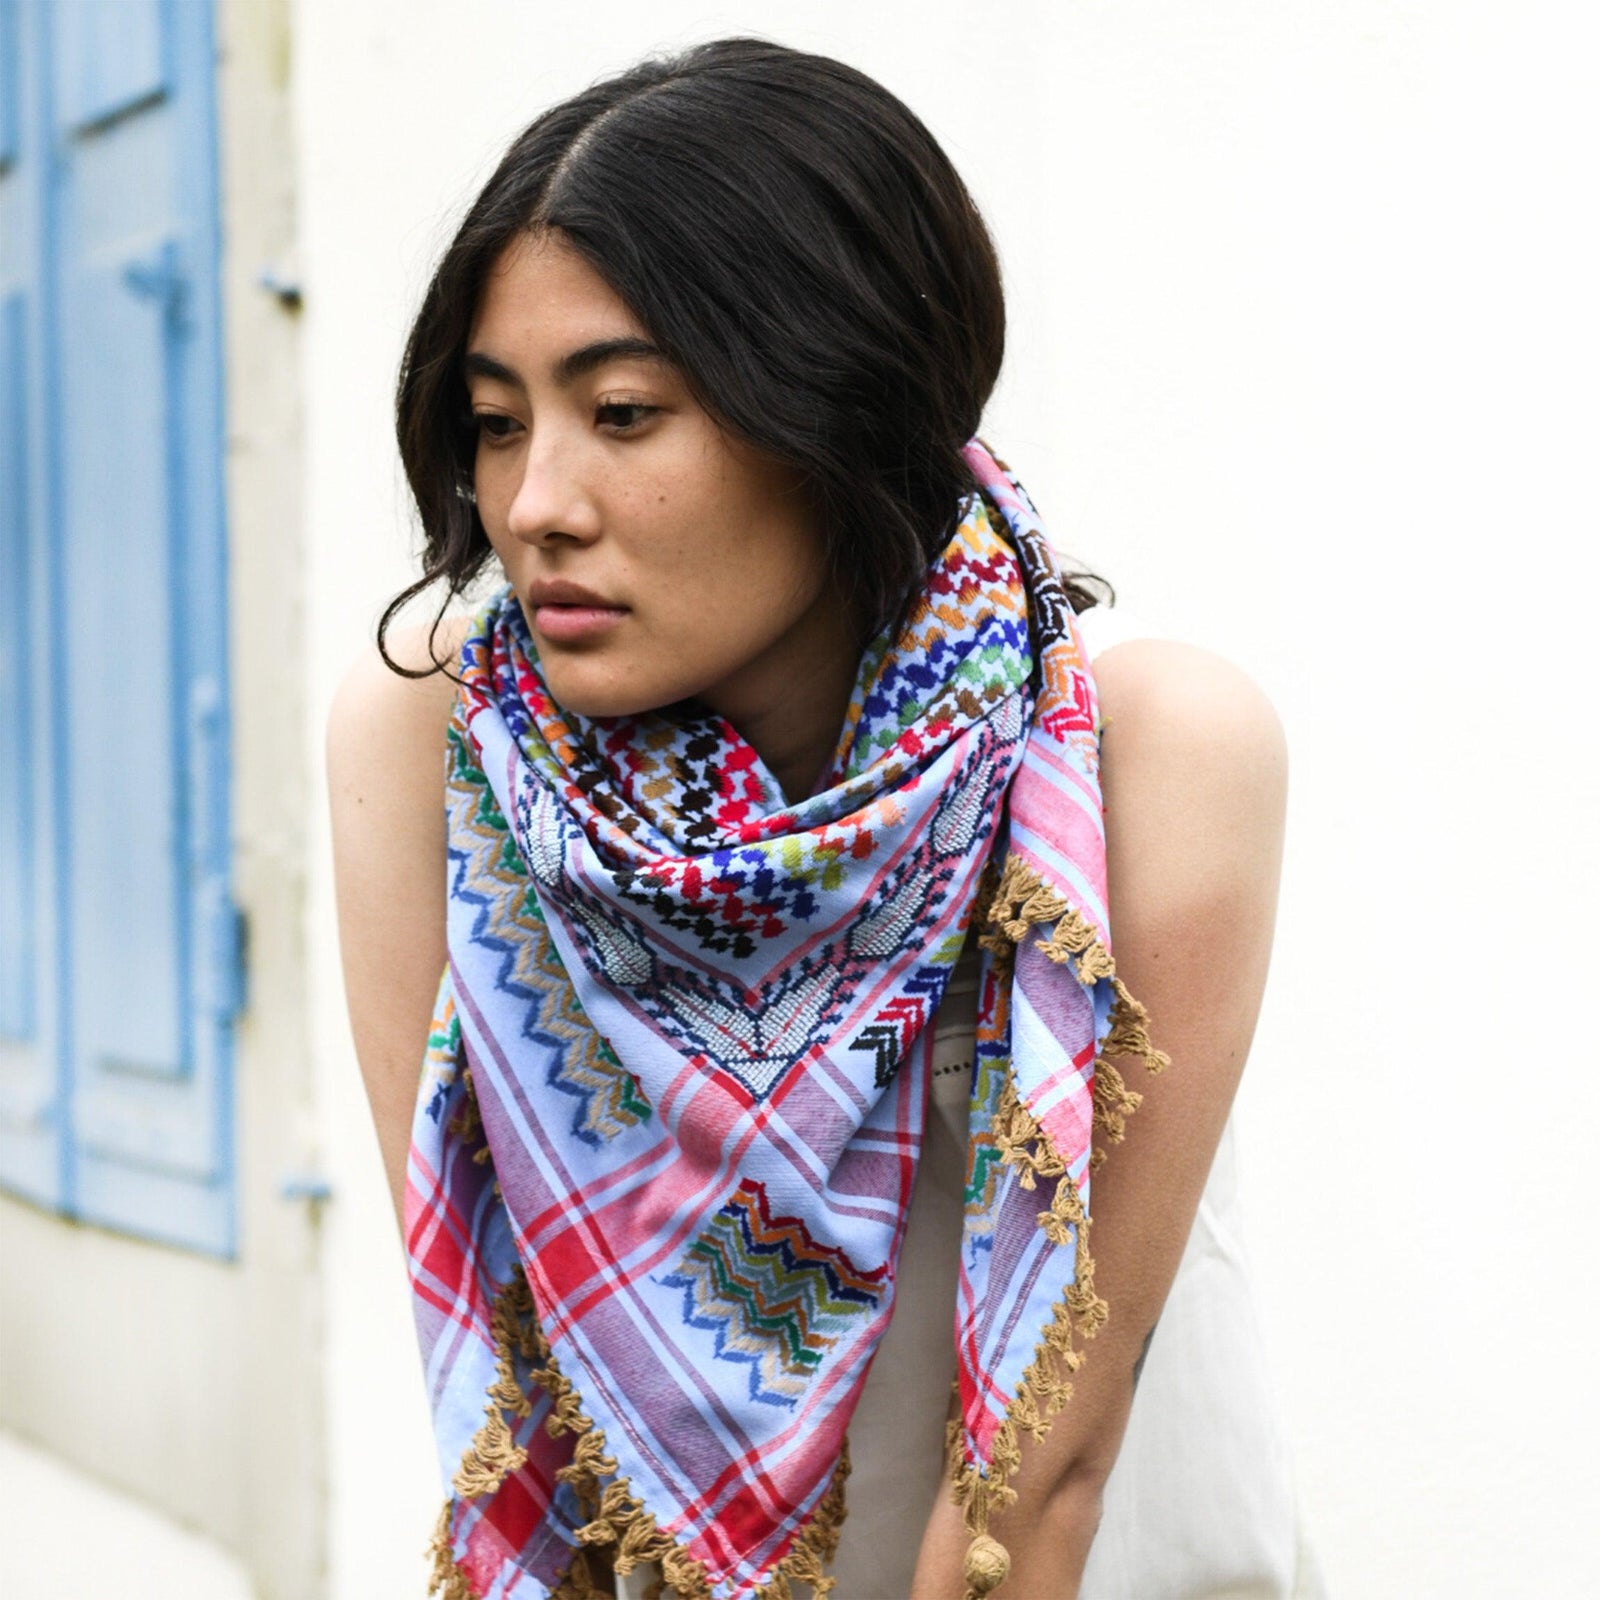 Buy Keffiyeh brown and beige Palestinian scarf